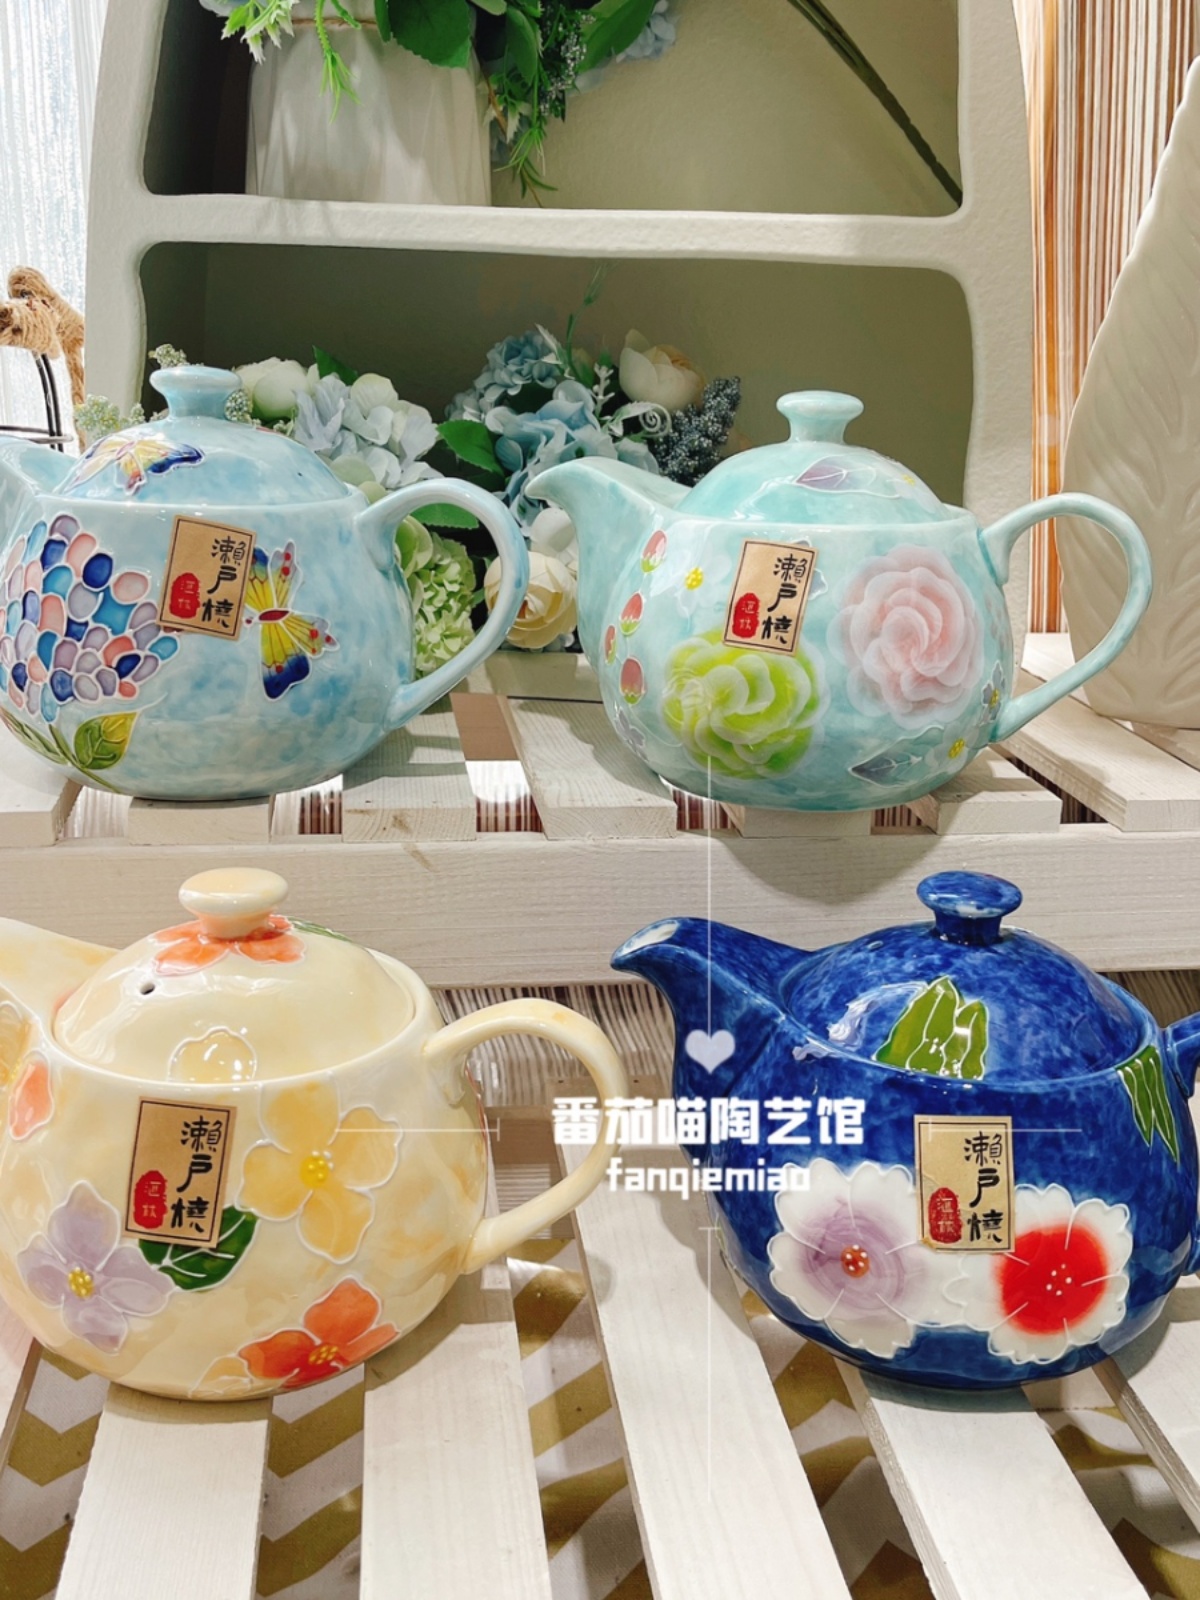 日式復古大容量茶壺套裝 瀨戶燒陶瓷釉下彩 精緻美觀 801900ml 適用於居家泡茶